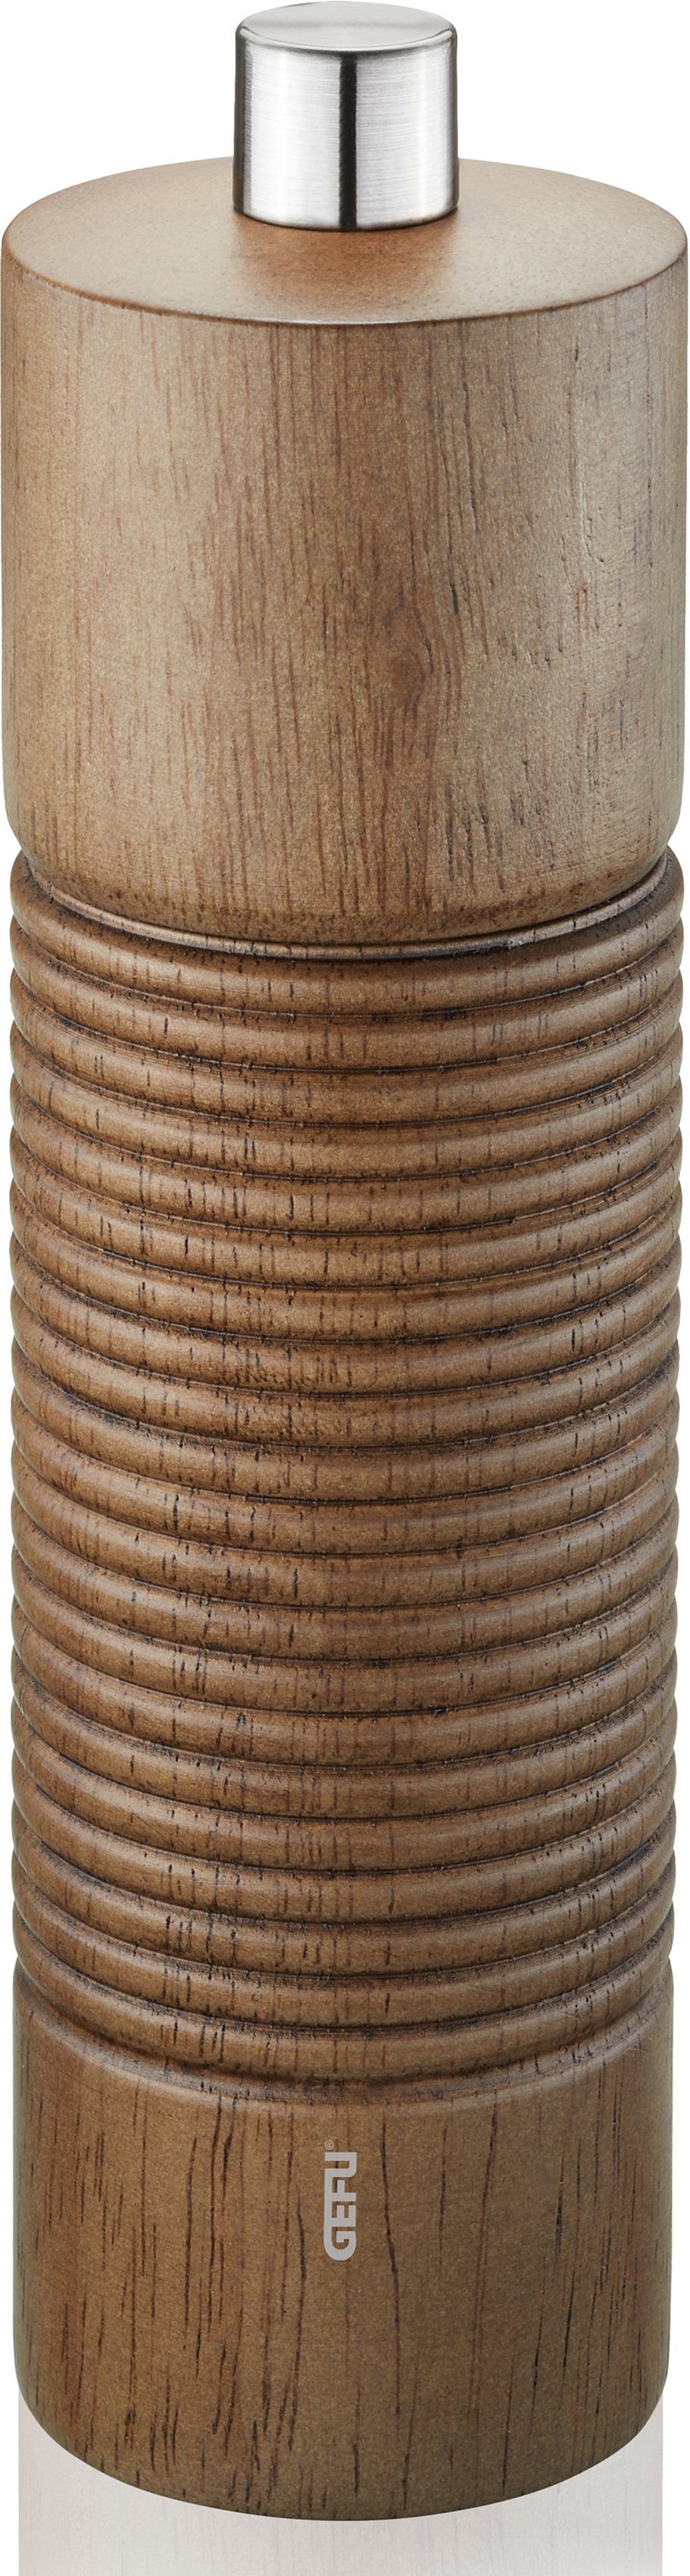 GEFU Salz-/Pfeffermühle TEDORO manuell, stufenlos einstellbares Keramikmahlwerk holzfarben/silberfarben